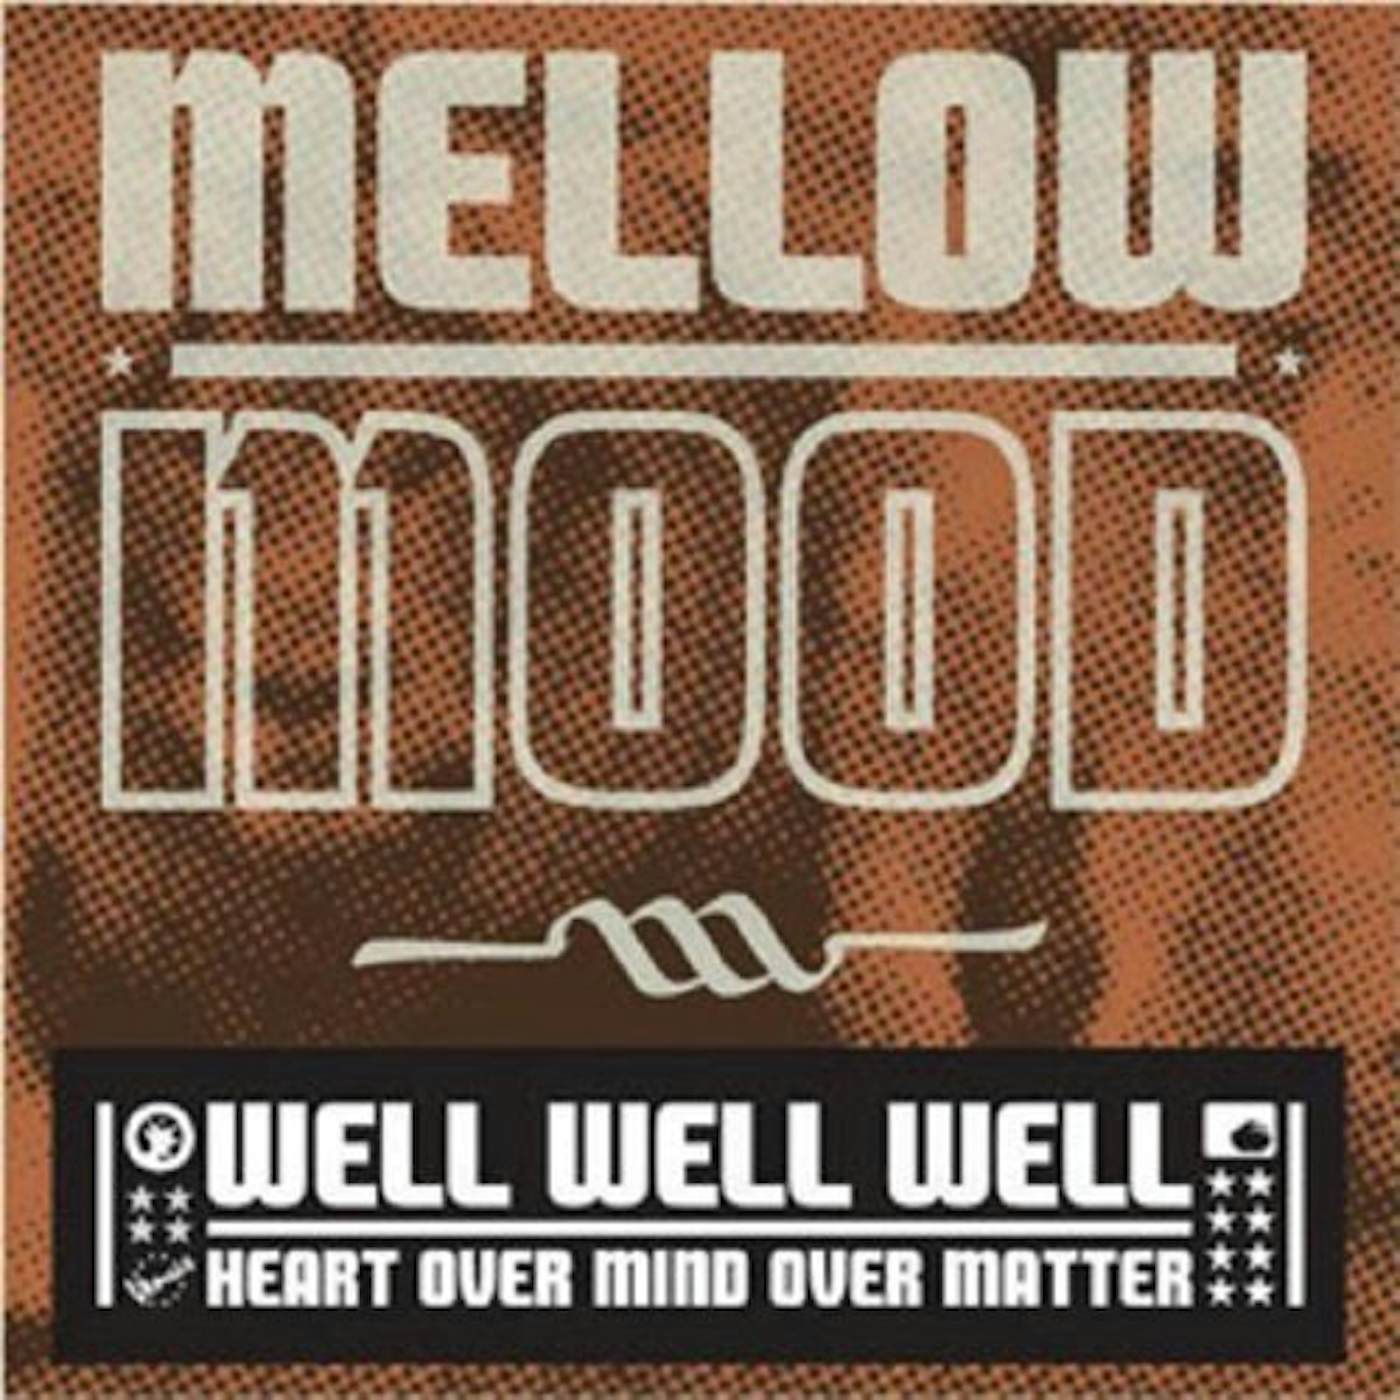 Mellow Mood WELL WELL WELL CD